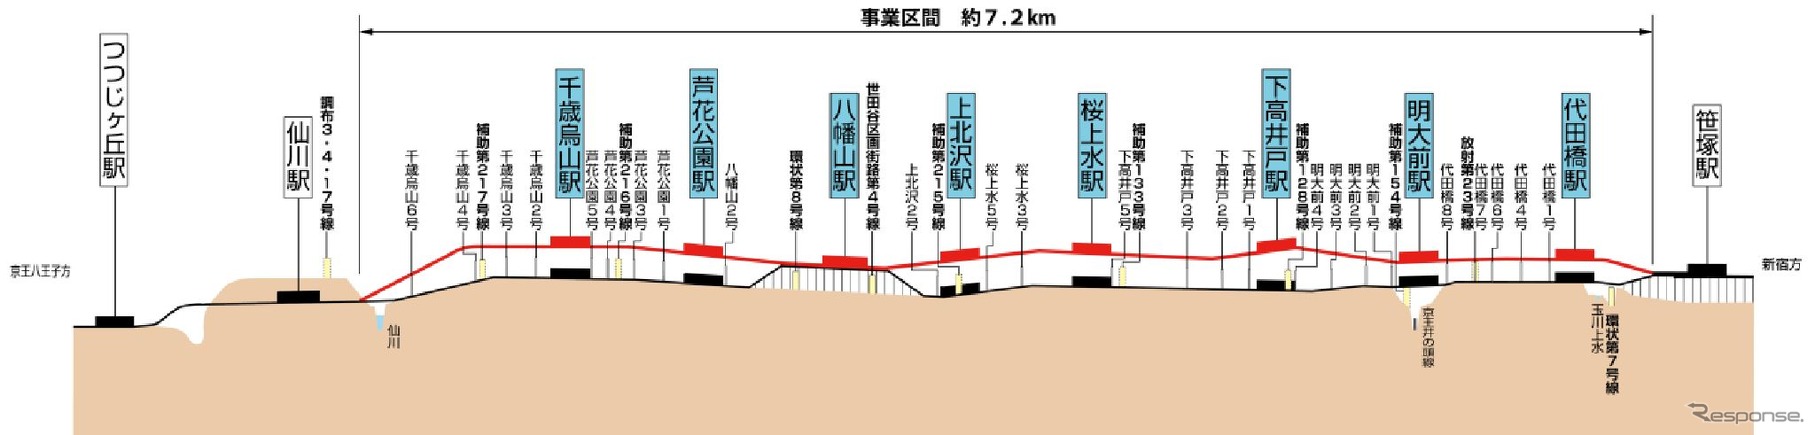 京王線笹塚～仙川間連続立体化工事の概要。赤い部分が高架化される計画線。八幡山駅は1970年に高架化されている。